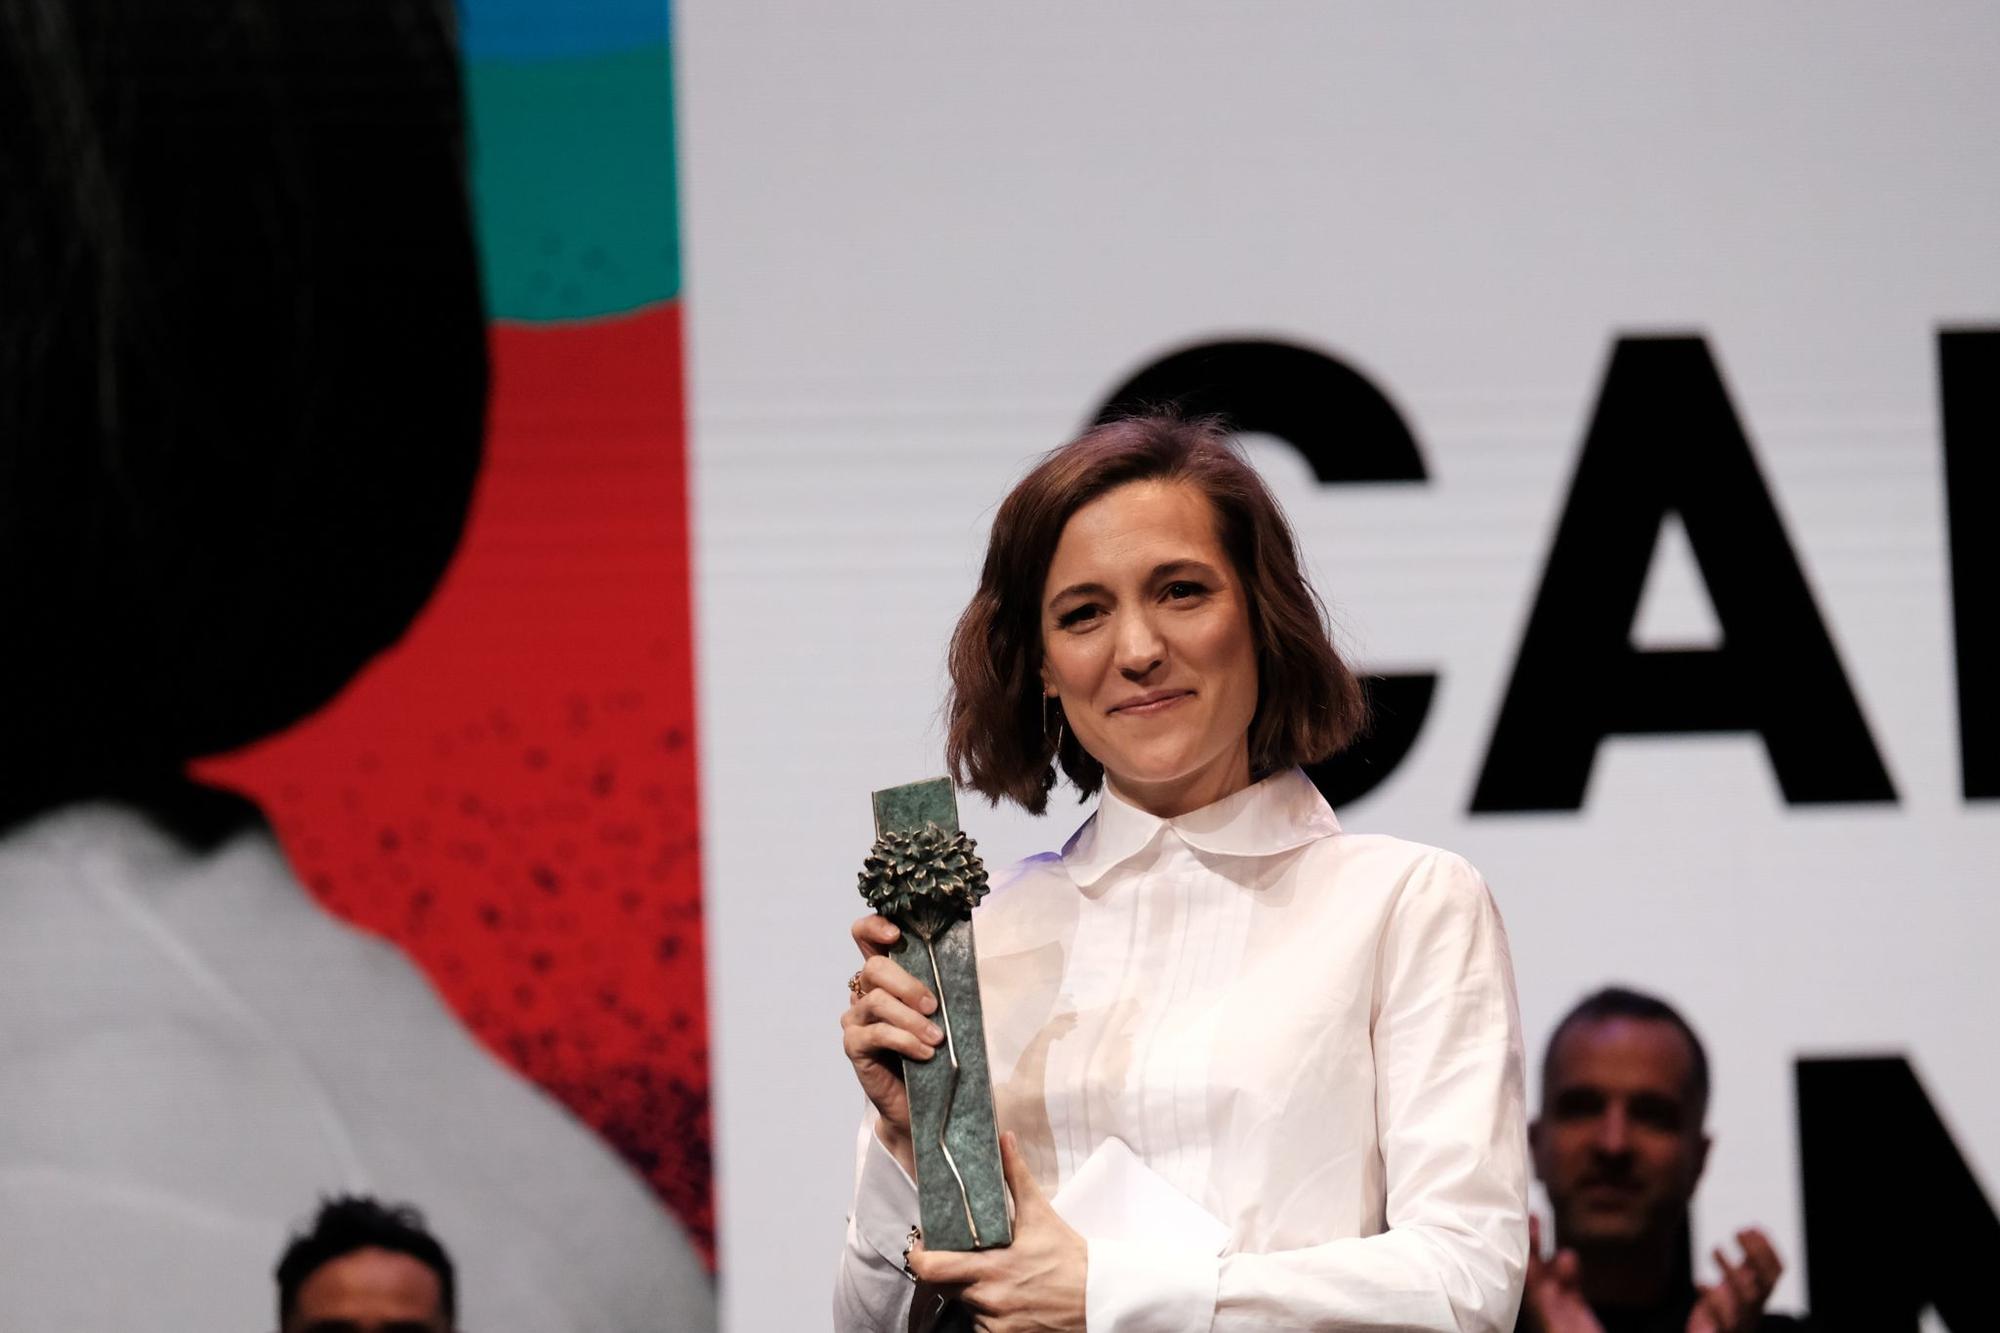 La directora Carla Simón recibió el Premio Málaga Talent-La Opinión de Málaga del Festival de Cine de Málaga 2023